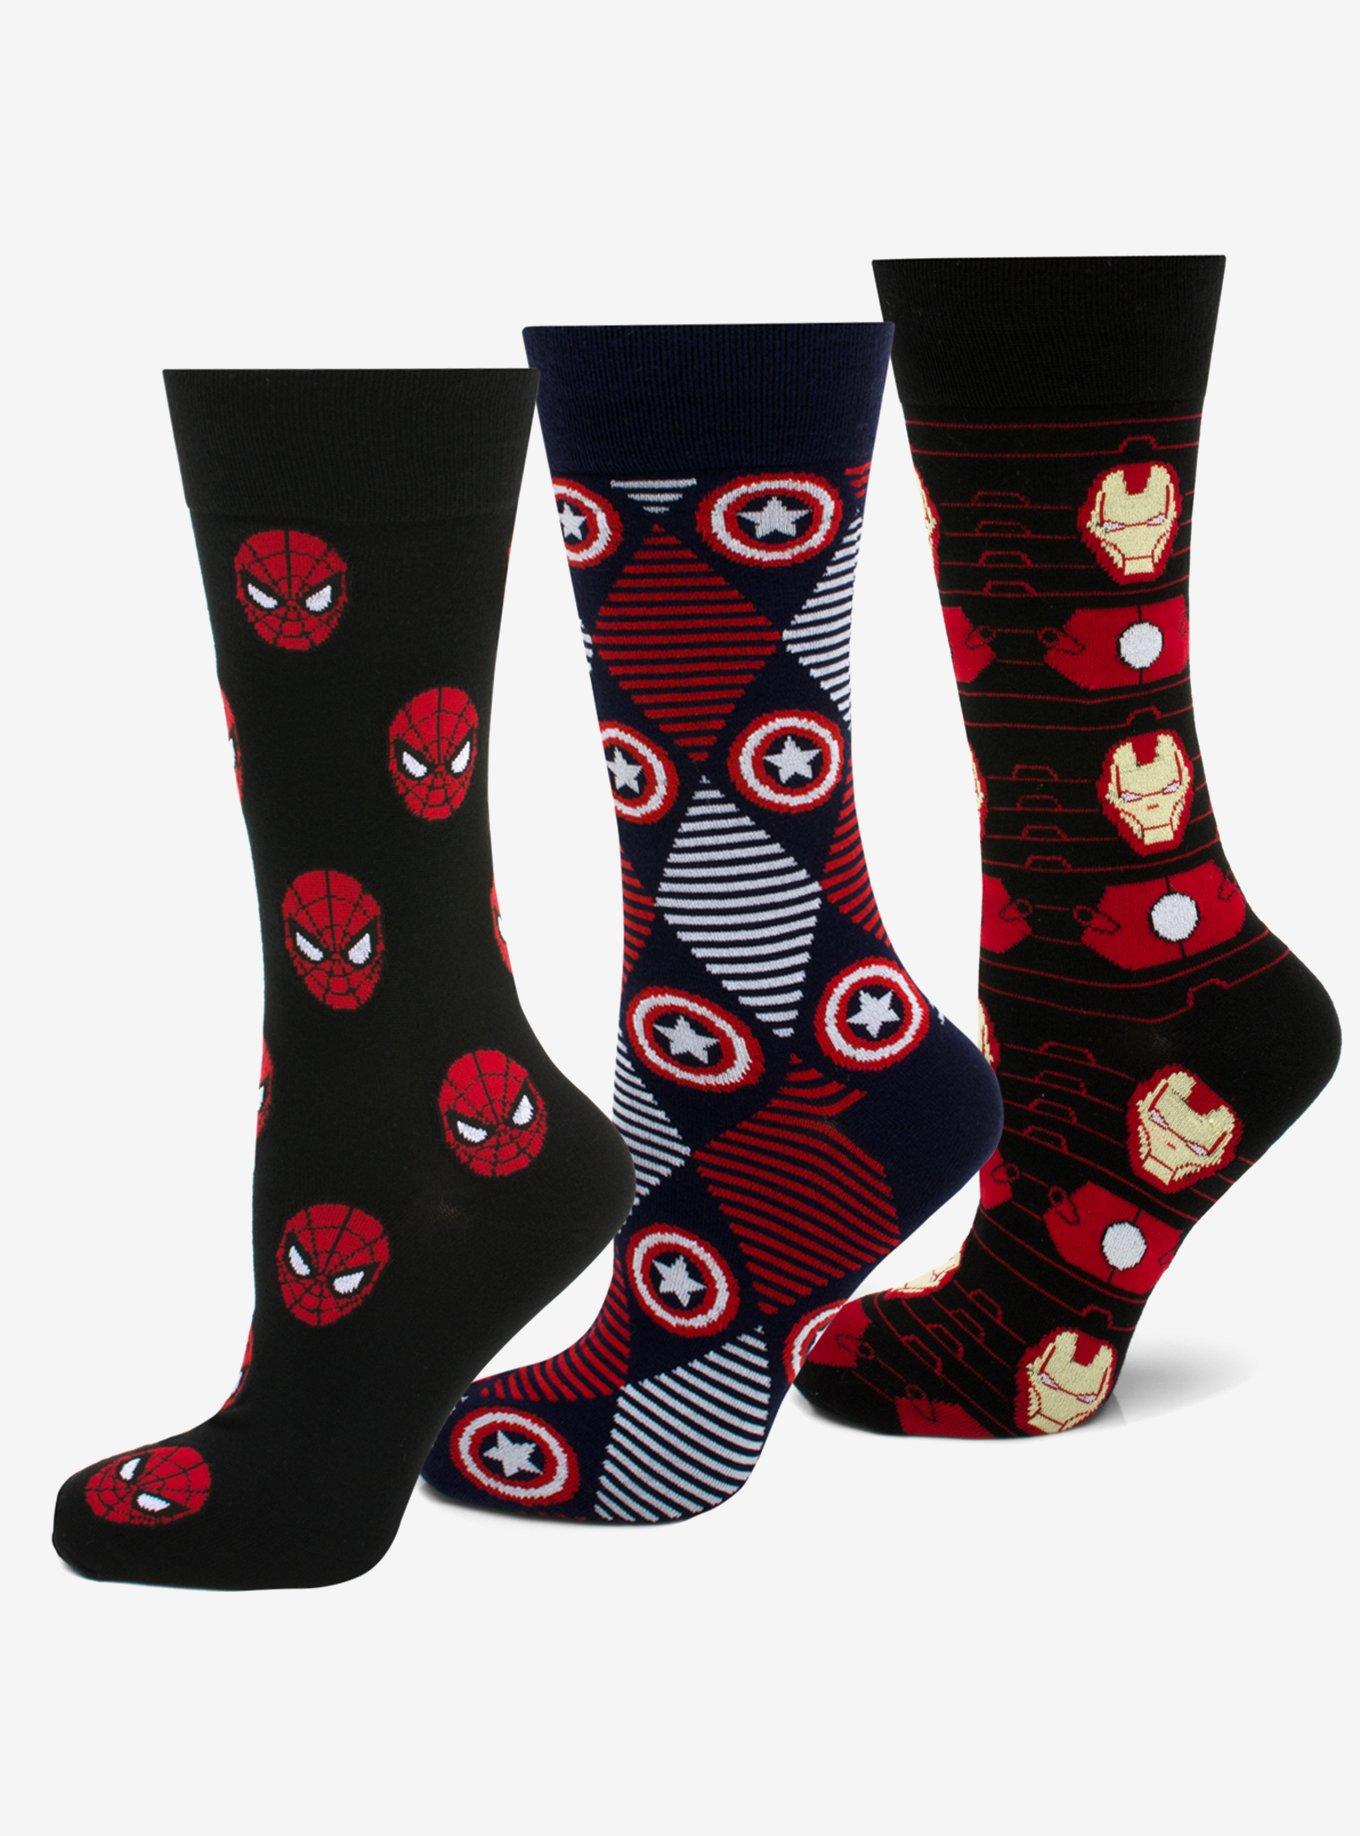 Marvel Avengers Favorite 3 Pair Socks Gift Set, , hi-res